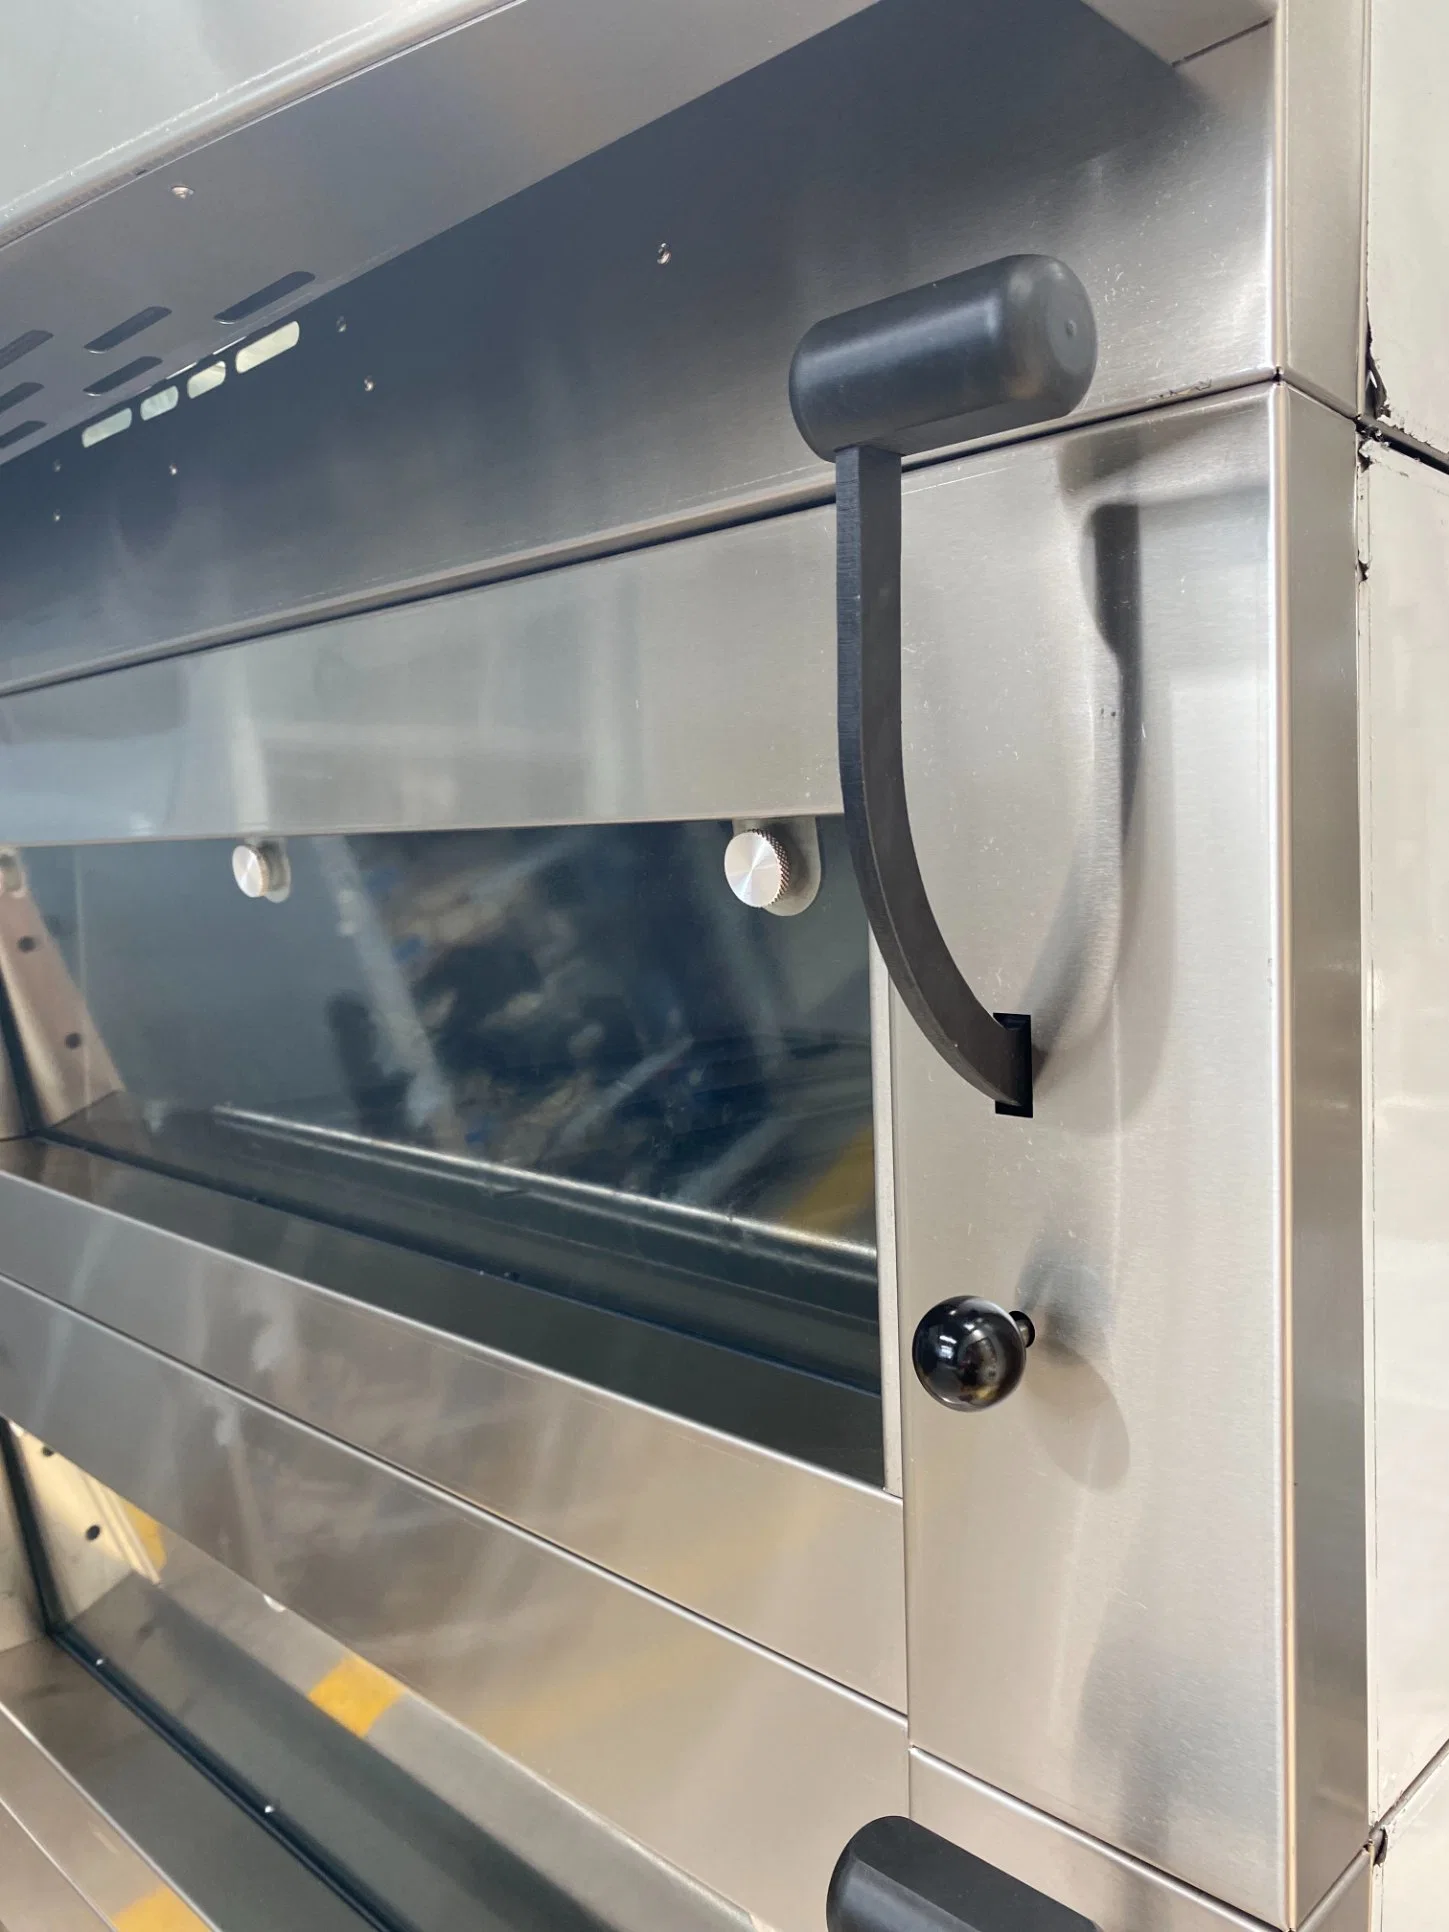 Exce Control Digital comercial panadería Chef vaso grande de equipos de cocción horno eléctrico, el equipo de la panadería de la máquina para hornear equipamiento de cocina con piedra para el pan un